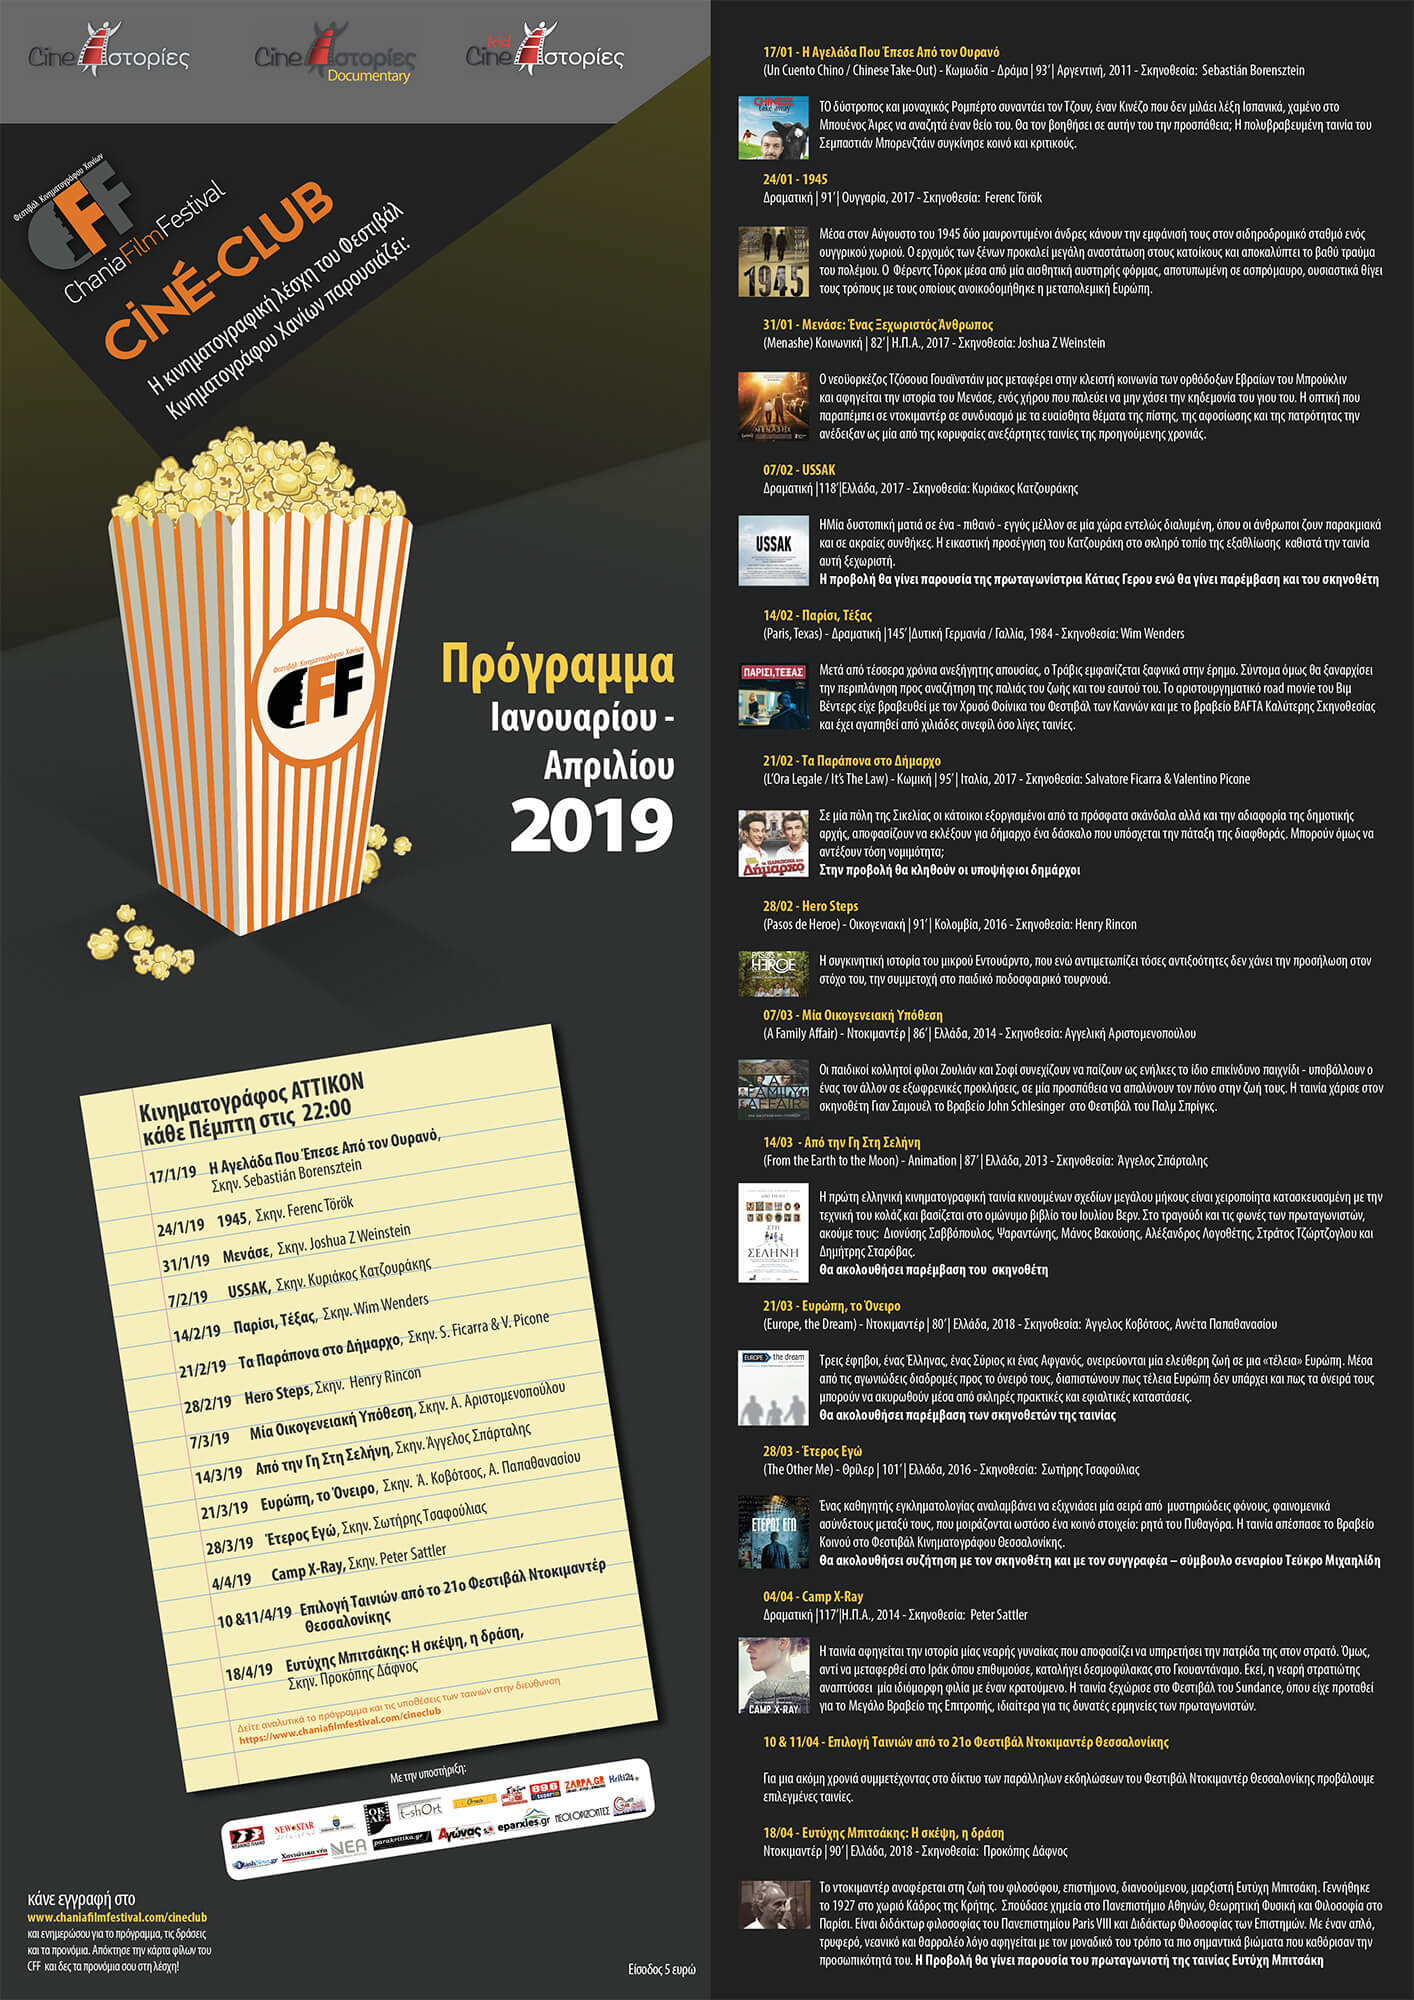 Cineclub 2019 - Chania Film Festival